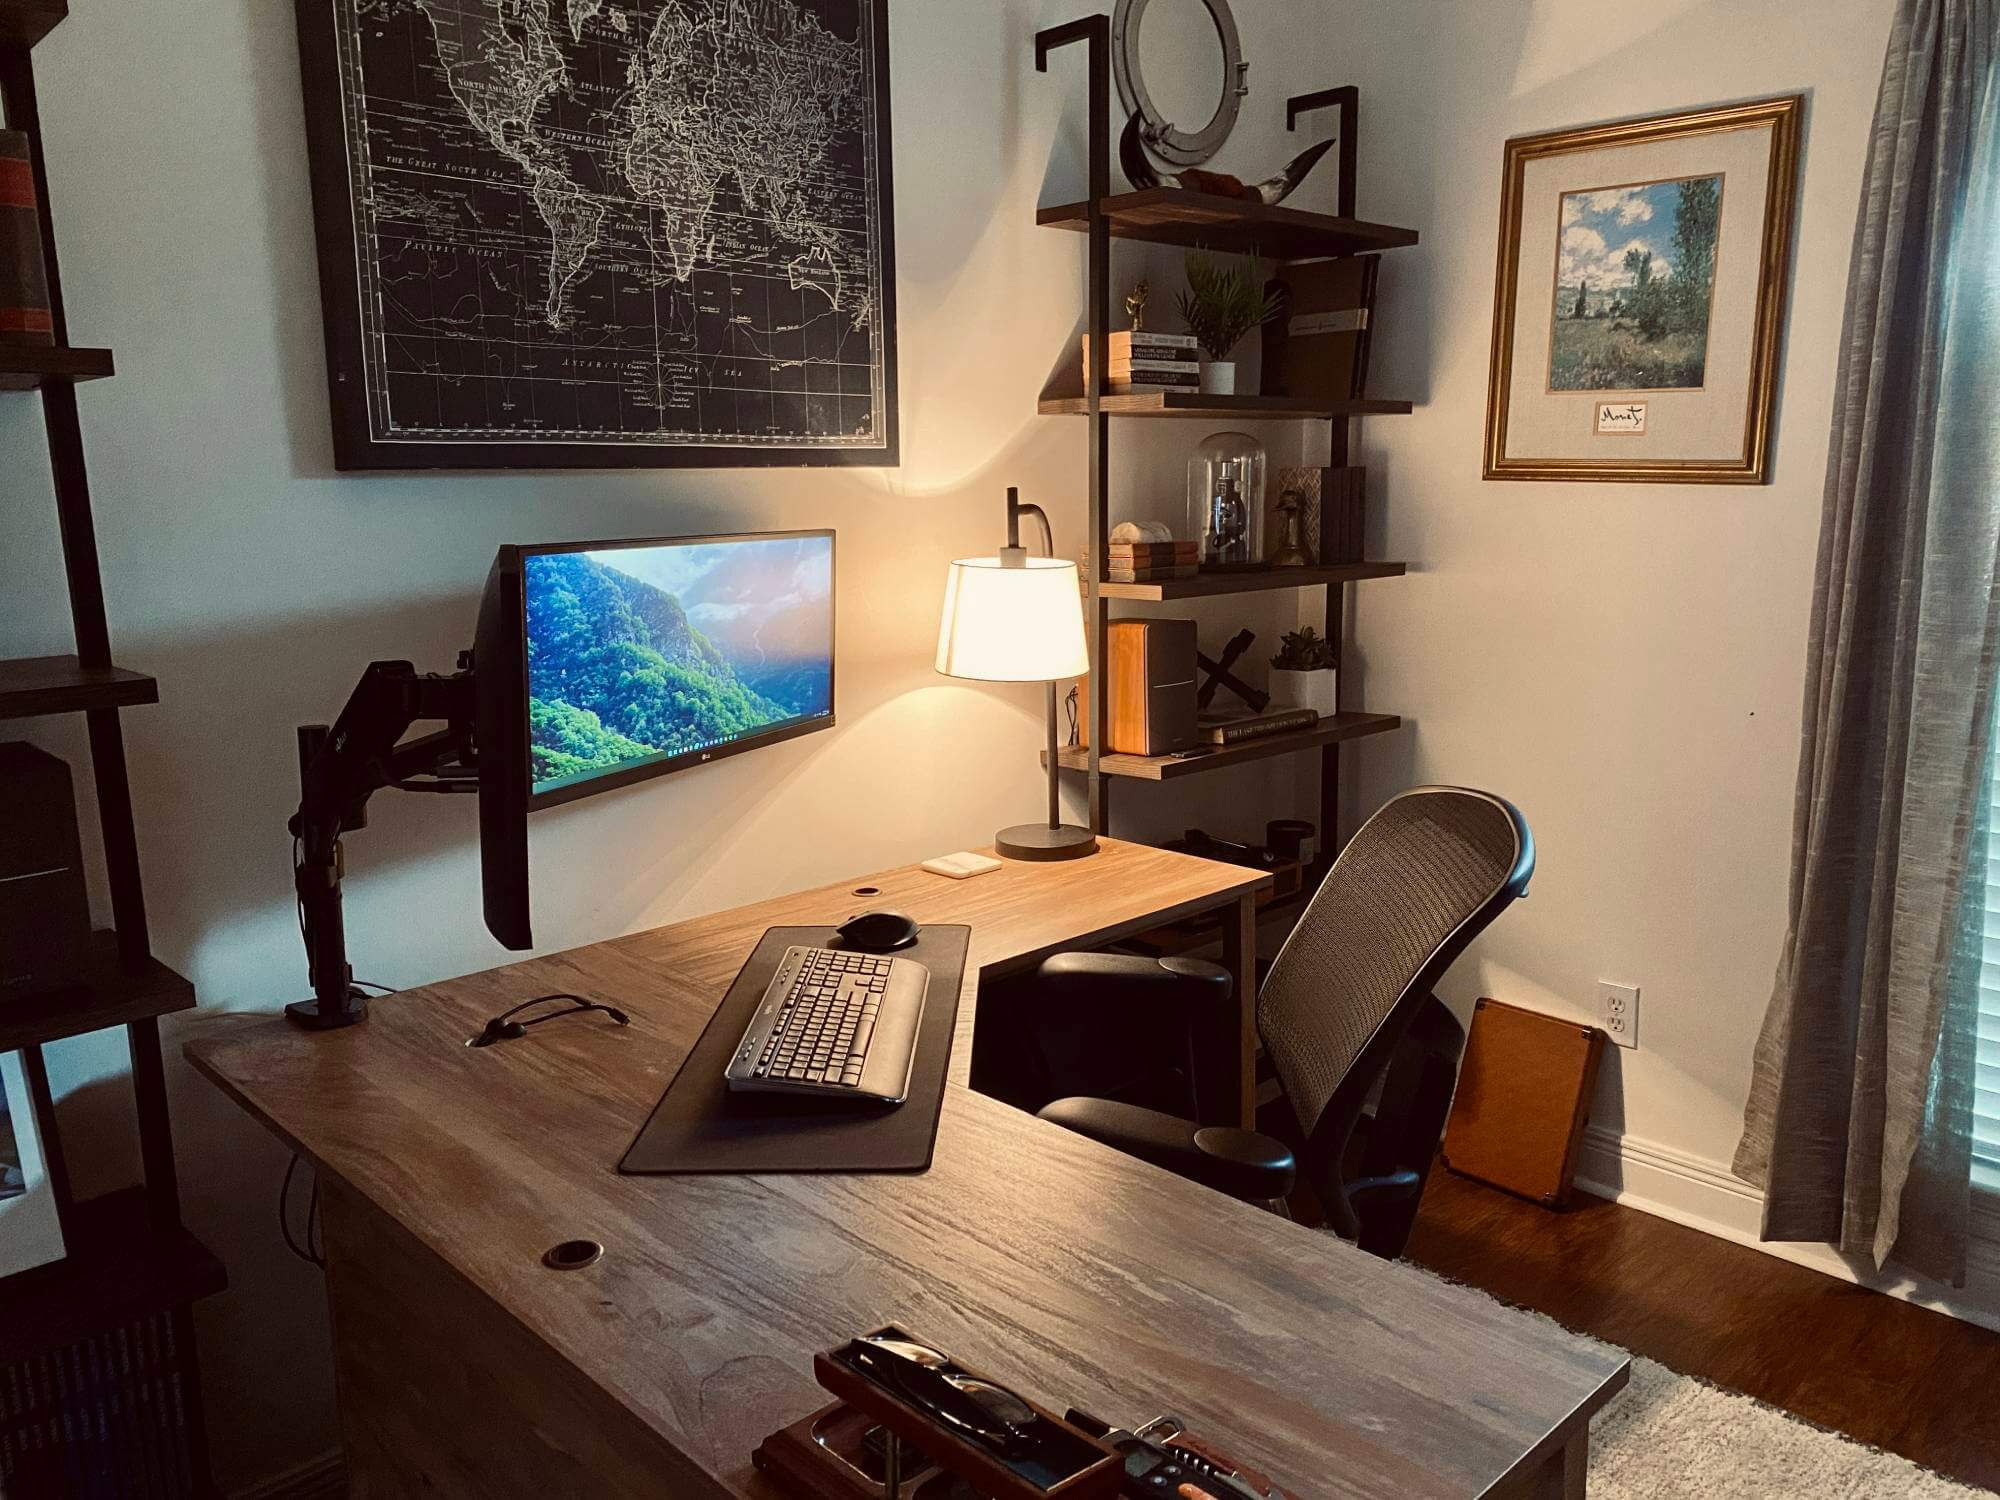 Music Studio Desk, L Shaped Desk, Custom Desk, Mid Century Modern